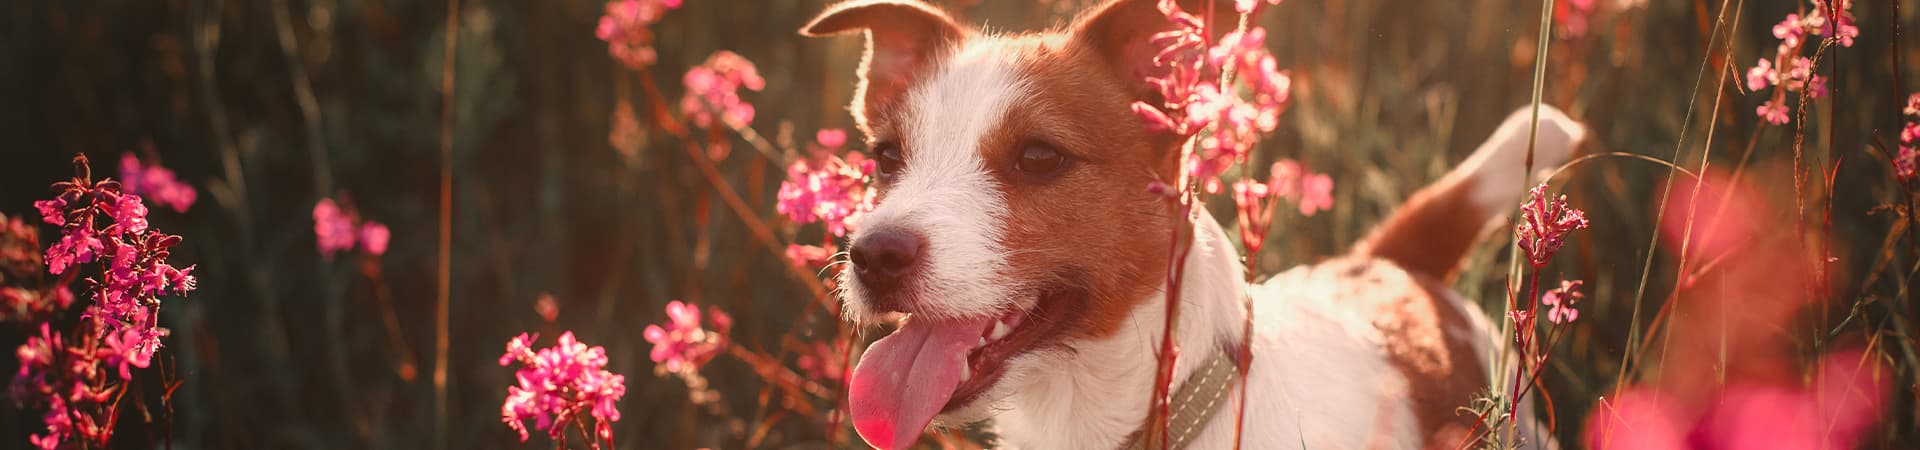 Hund steht zwischen schönen Pinken Blumen und die Sonne scheint